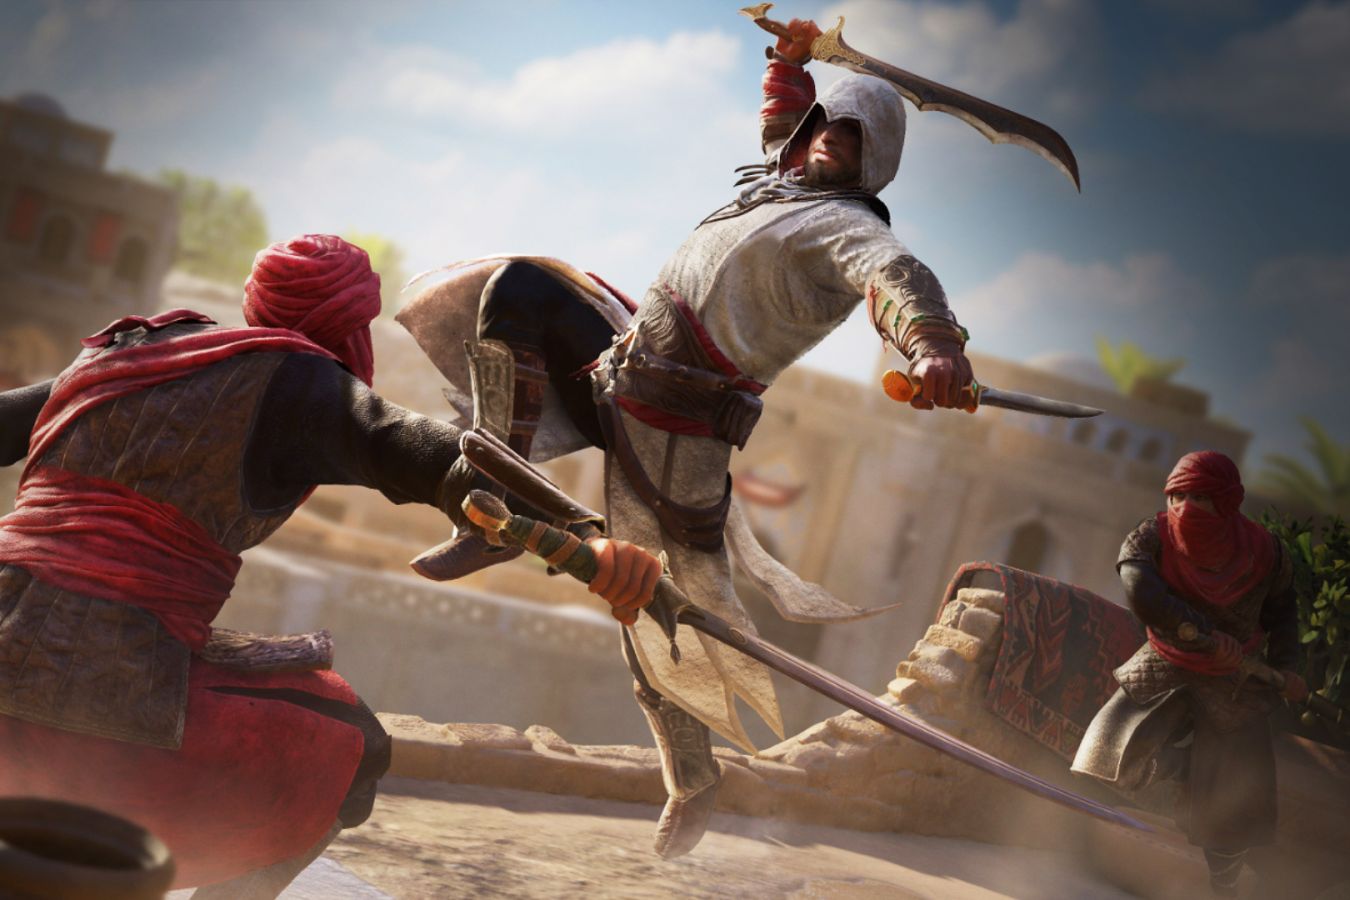 Assassin's Creed Mirage будет «только для взрослых»? Этот рейтинг не выдавали с 2015 года